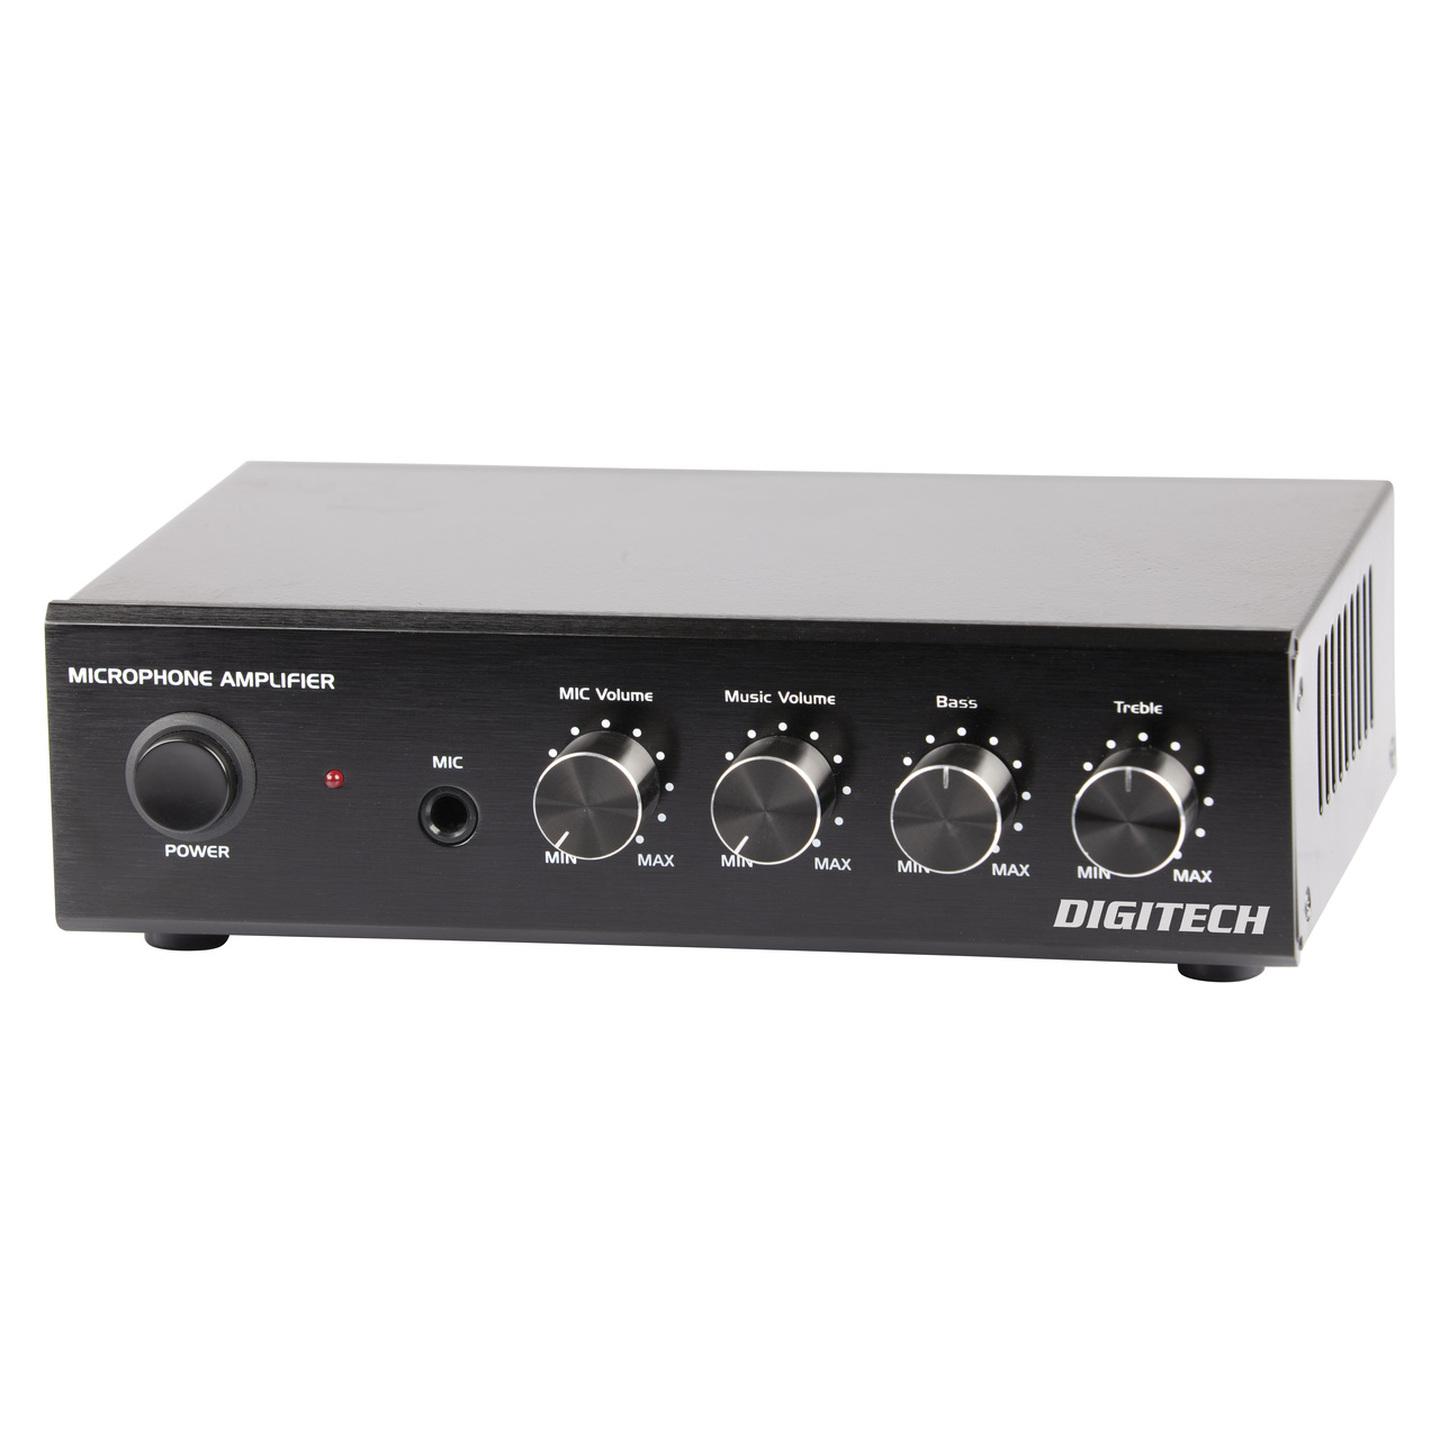 Digitech 25 Watt RMS Compact Stereo Amplifier